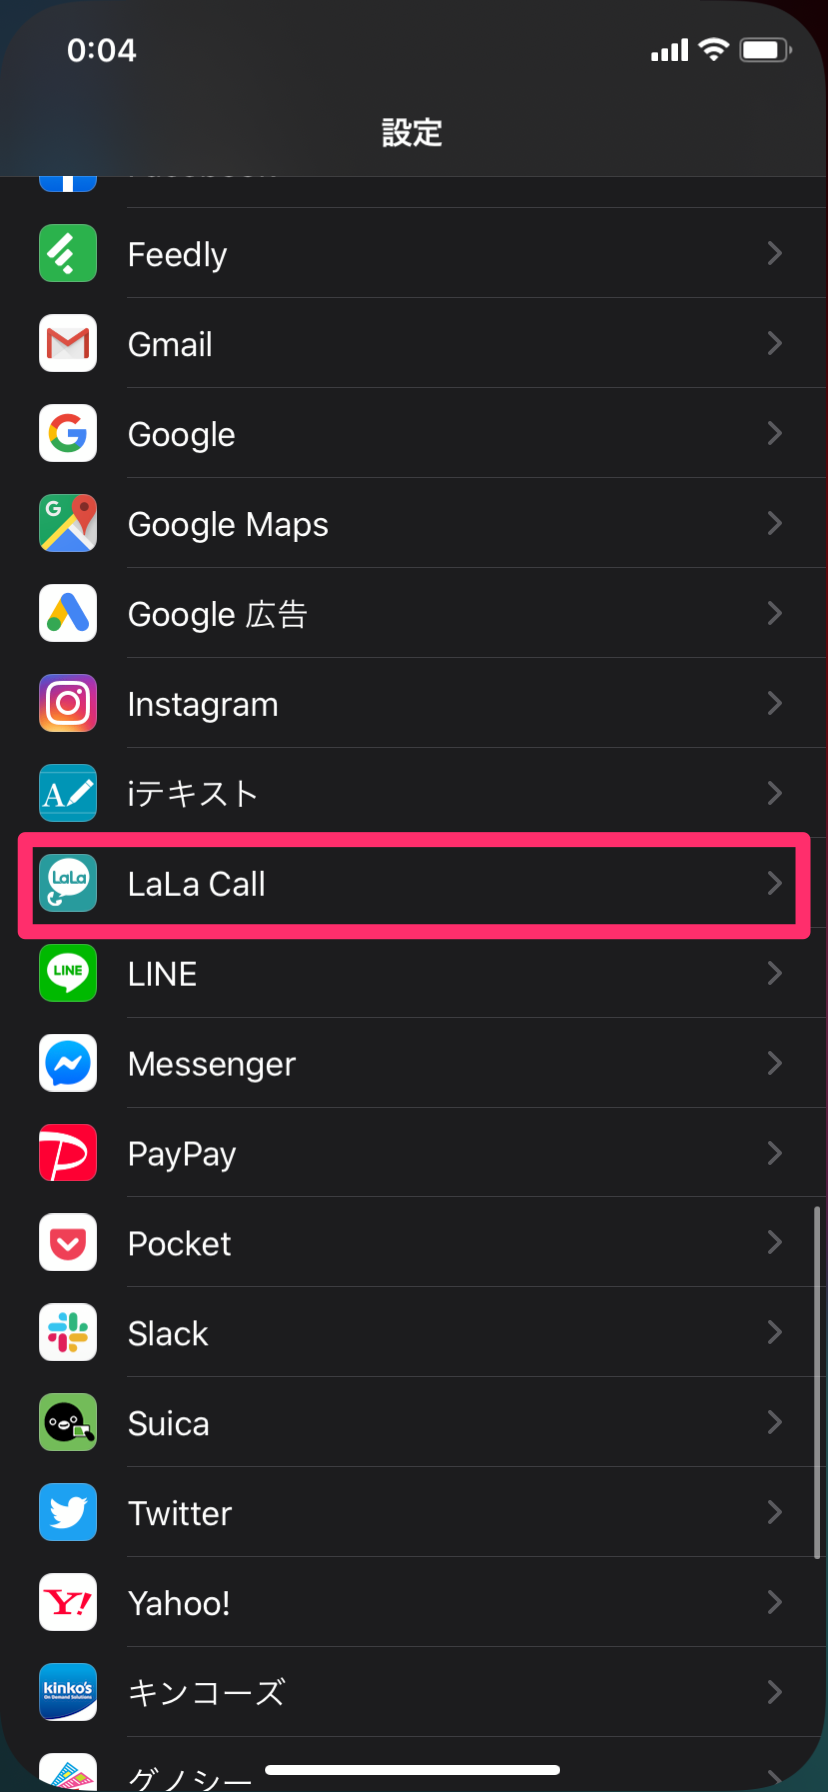 LaLa iOSのLaLa Callで片通話になる時に確認すべきポイントまとめ